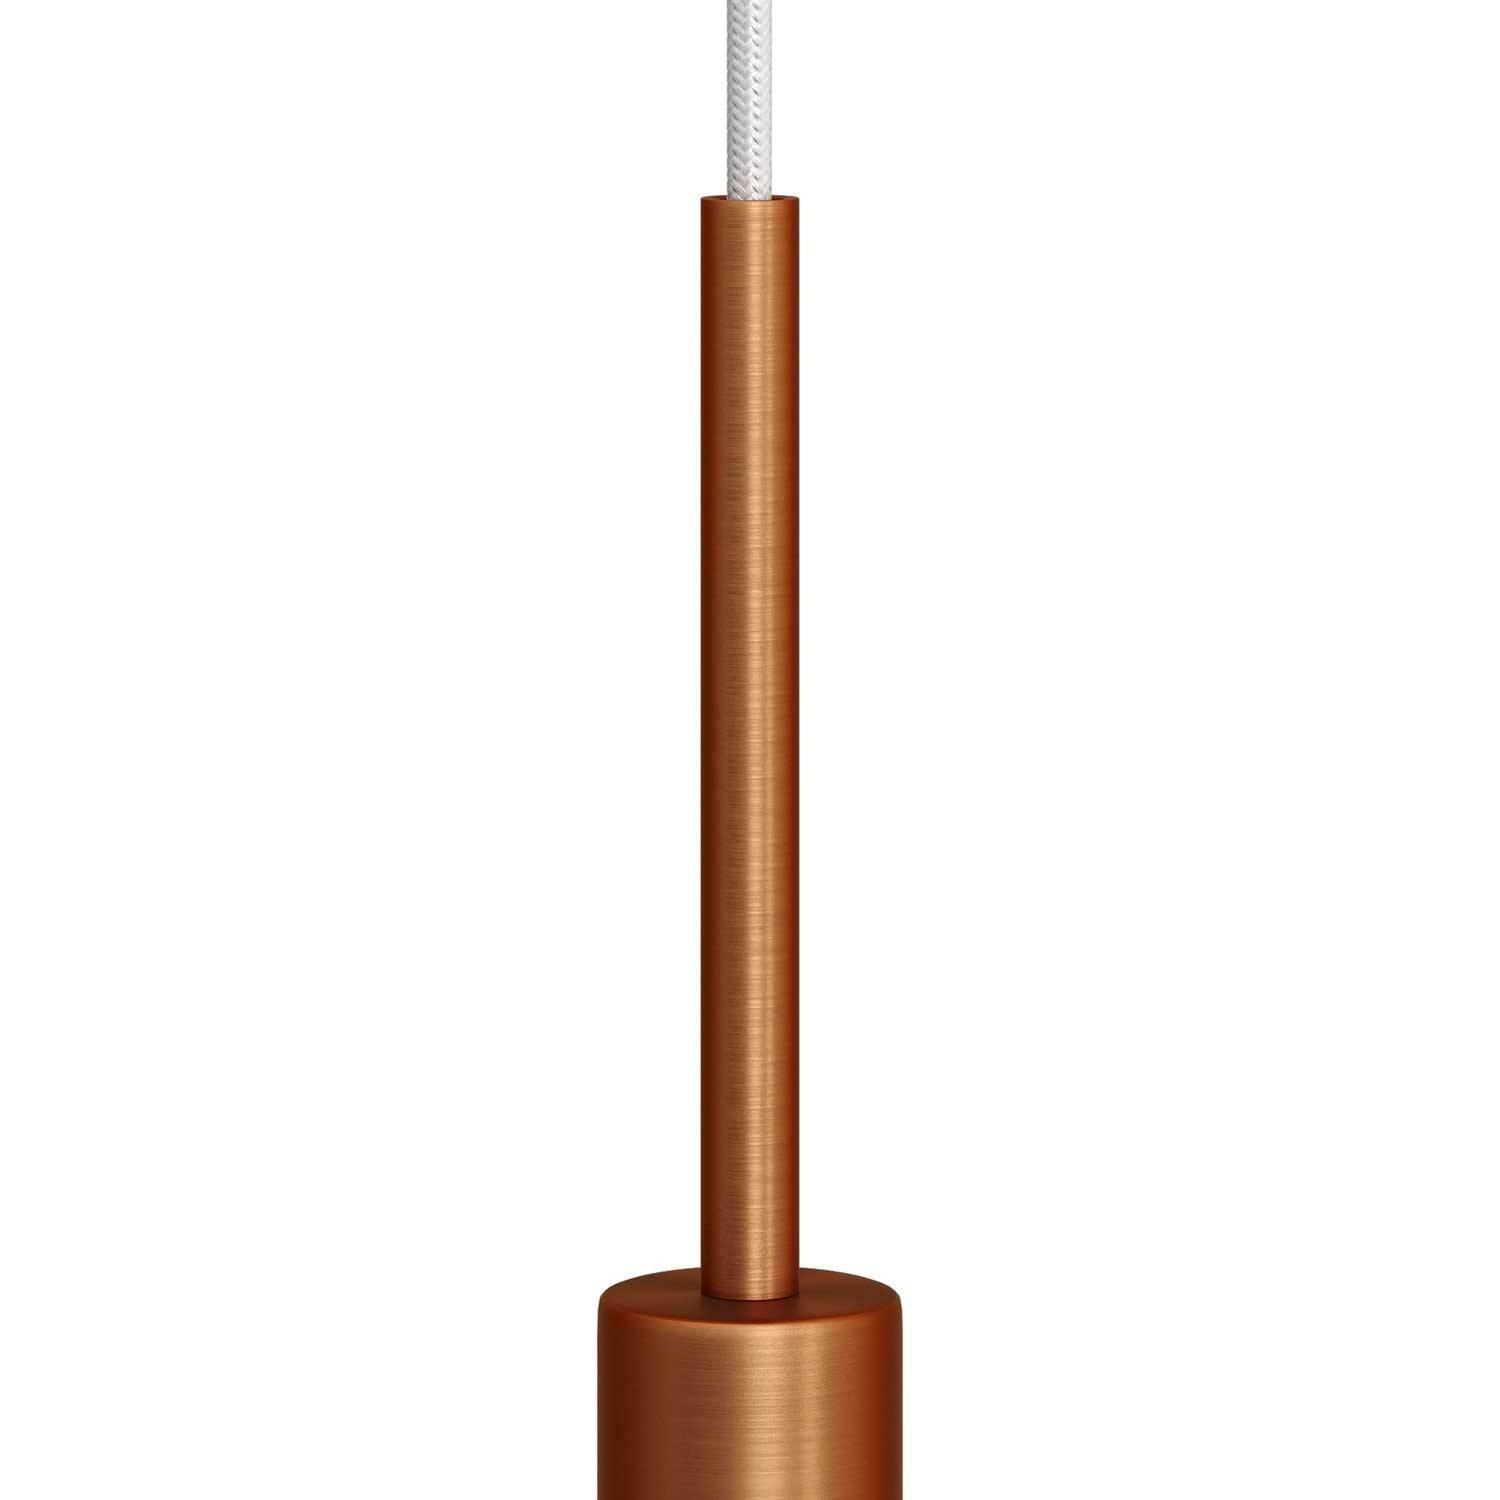 Braçadeira para cabo cilíndrica em metal, com 15 cm de comprimento, equipada com perno roscado, porca e anilha